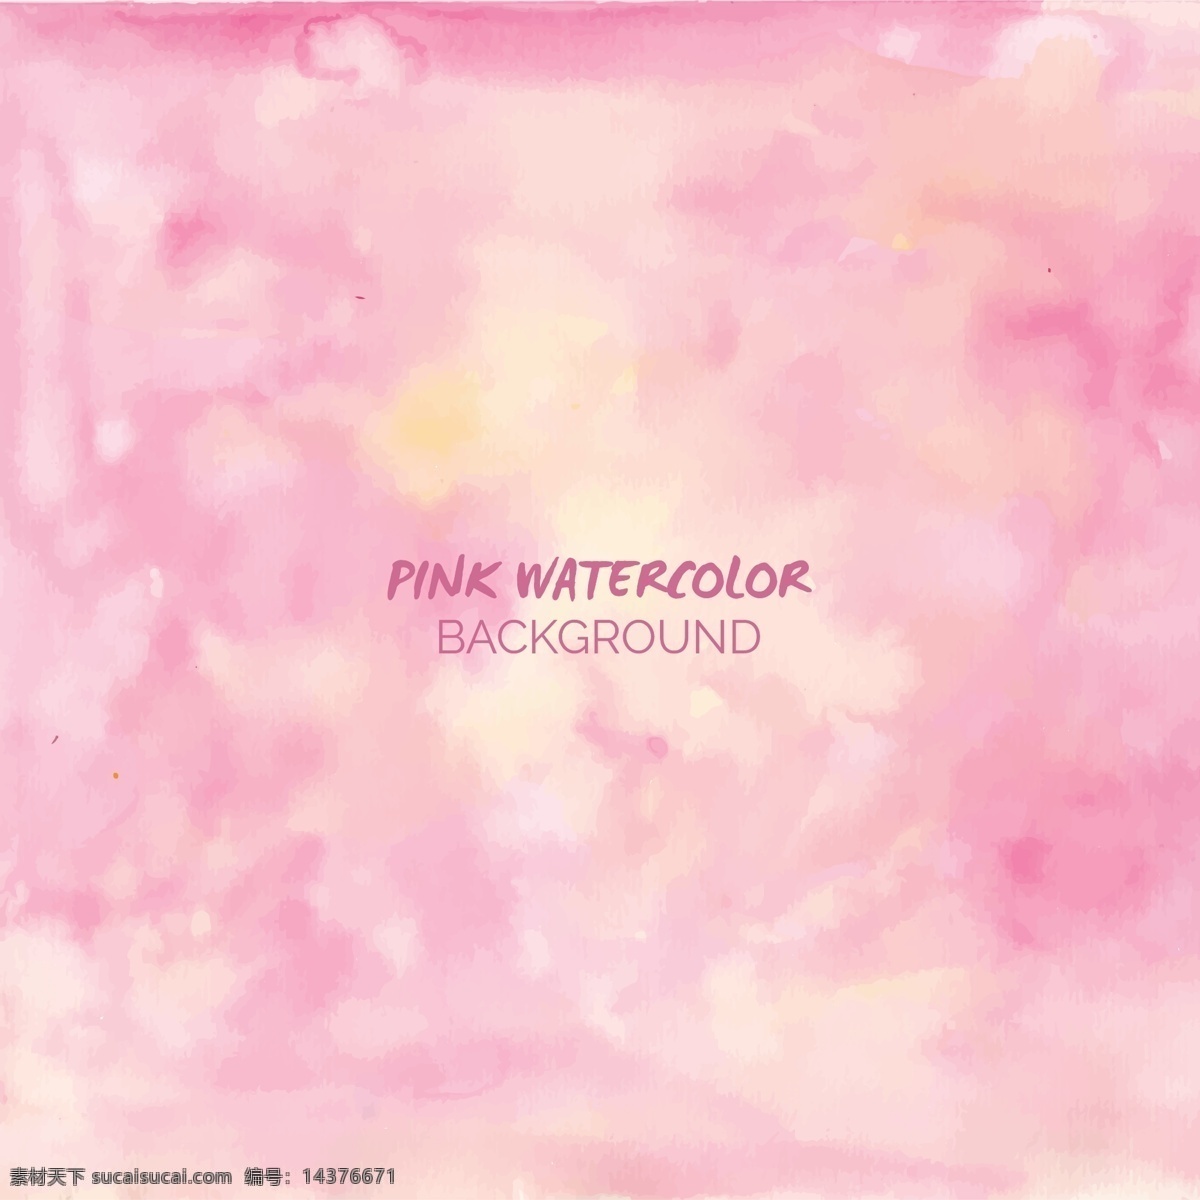 粉色水彩背景 背景 抽象 水彩 飞溅 油漆 粉红色 艺术 色斑 污点 平滑 彩绘